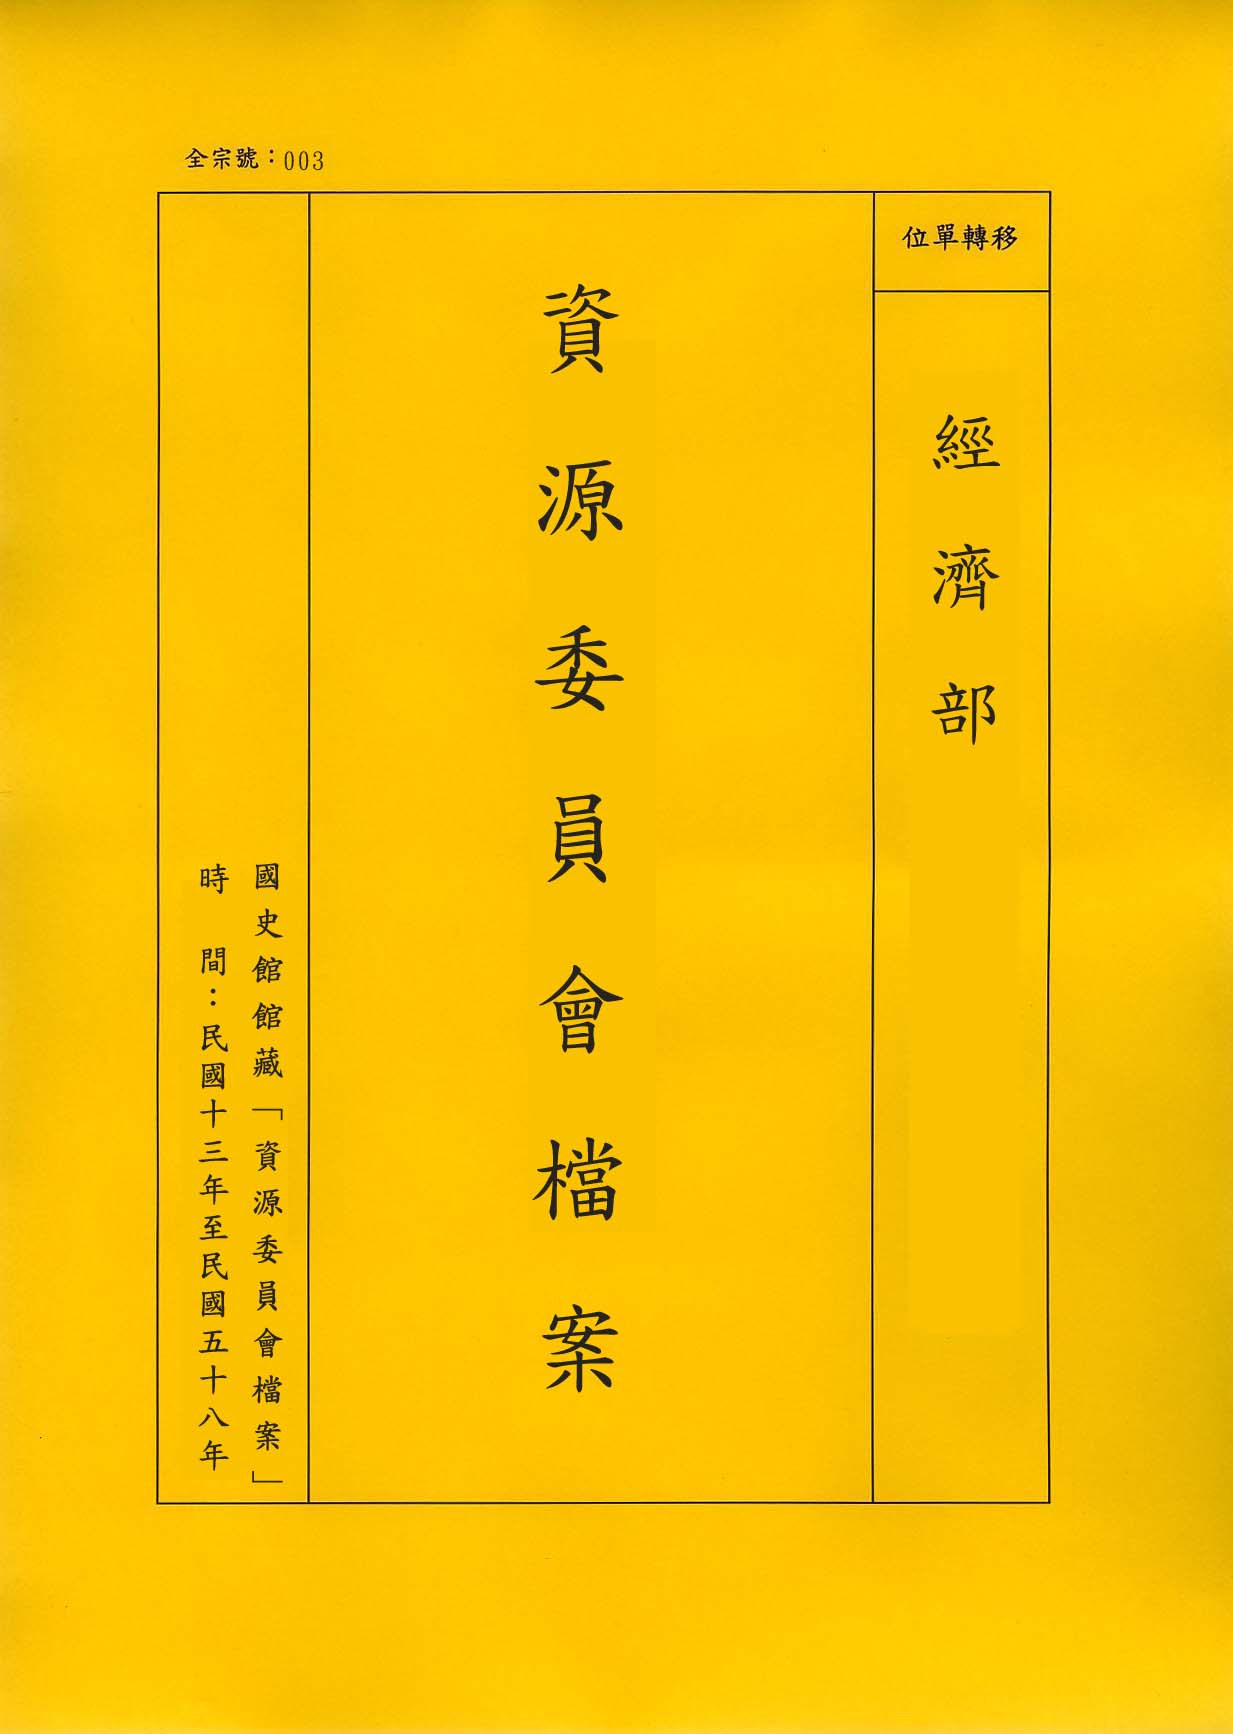 卷名:衡陽市工廠調查表(003-010306-0304)